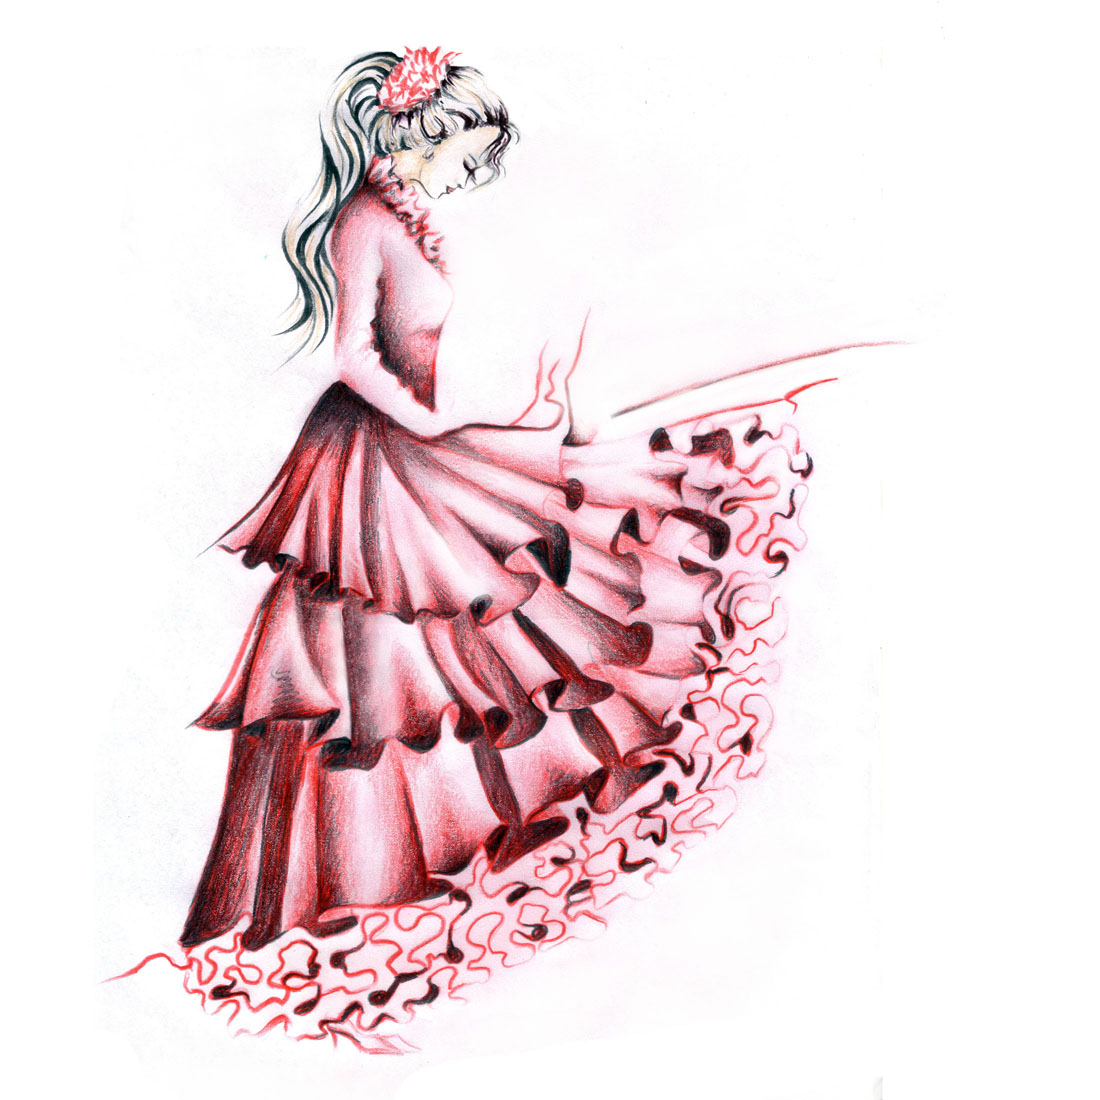 طراحی لباس دخترانه با مداد رنگی